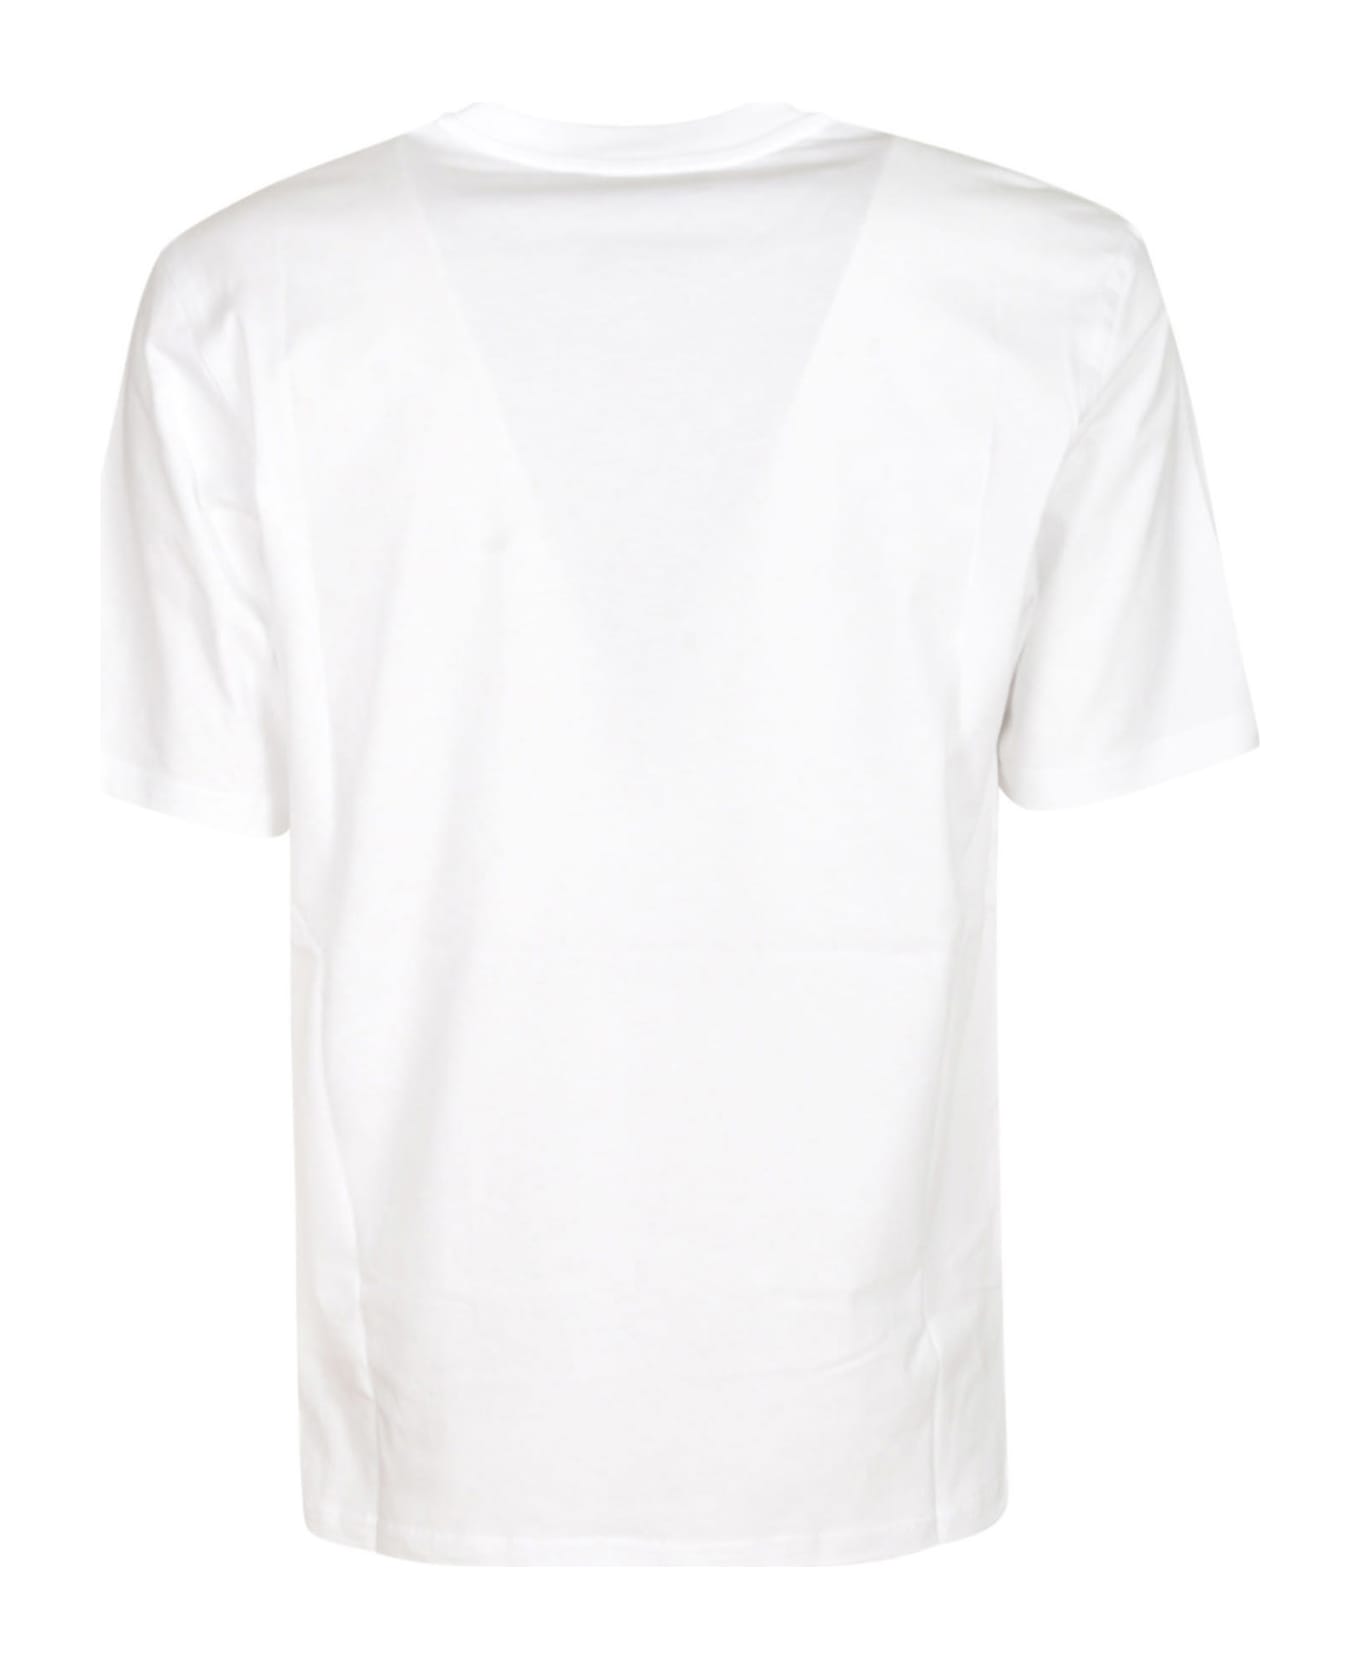 Moschino 100% Pure T-shirt - White